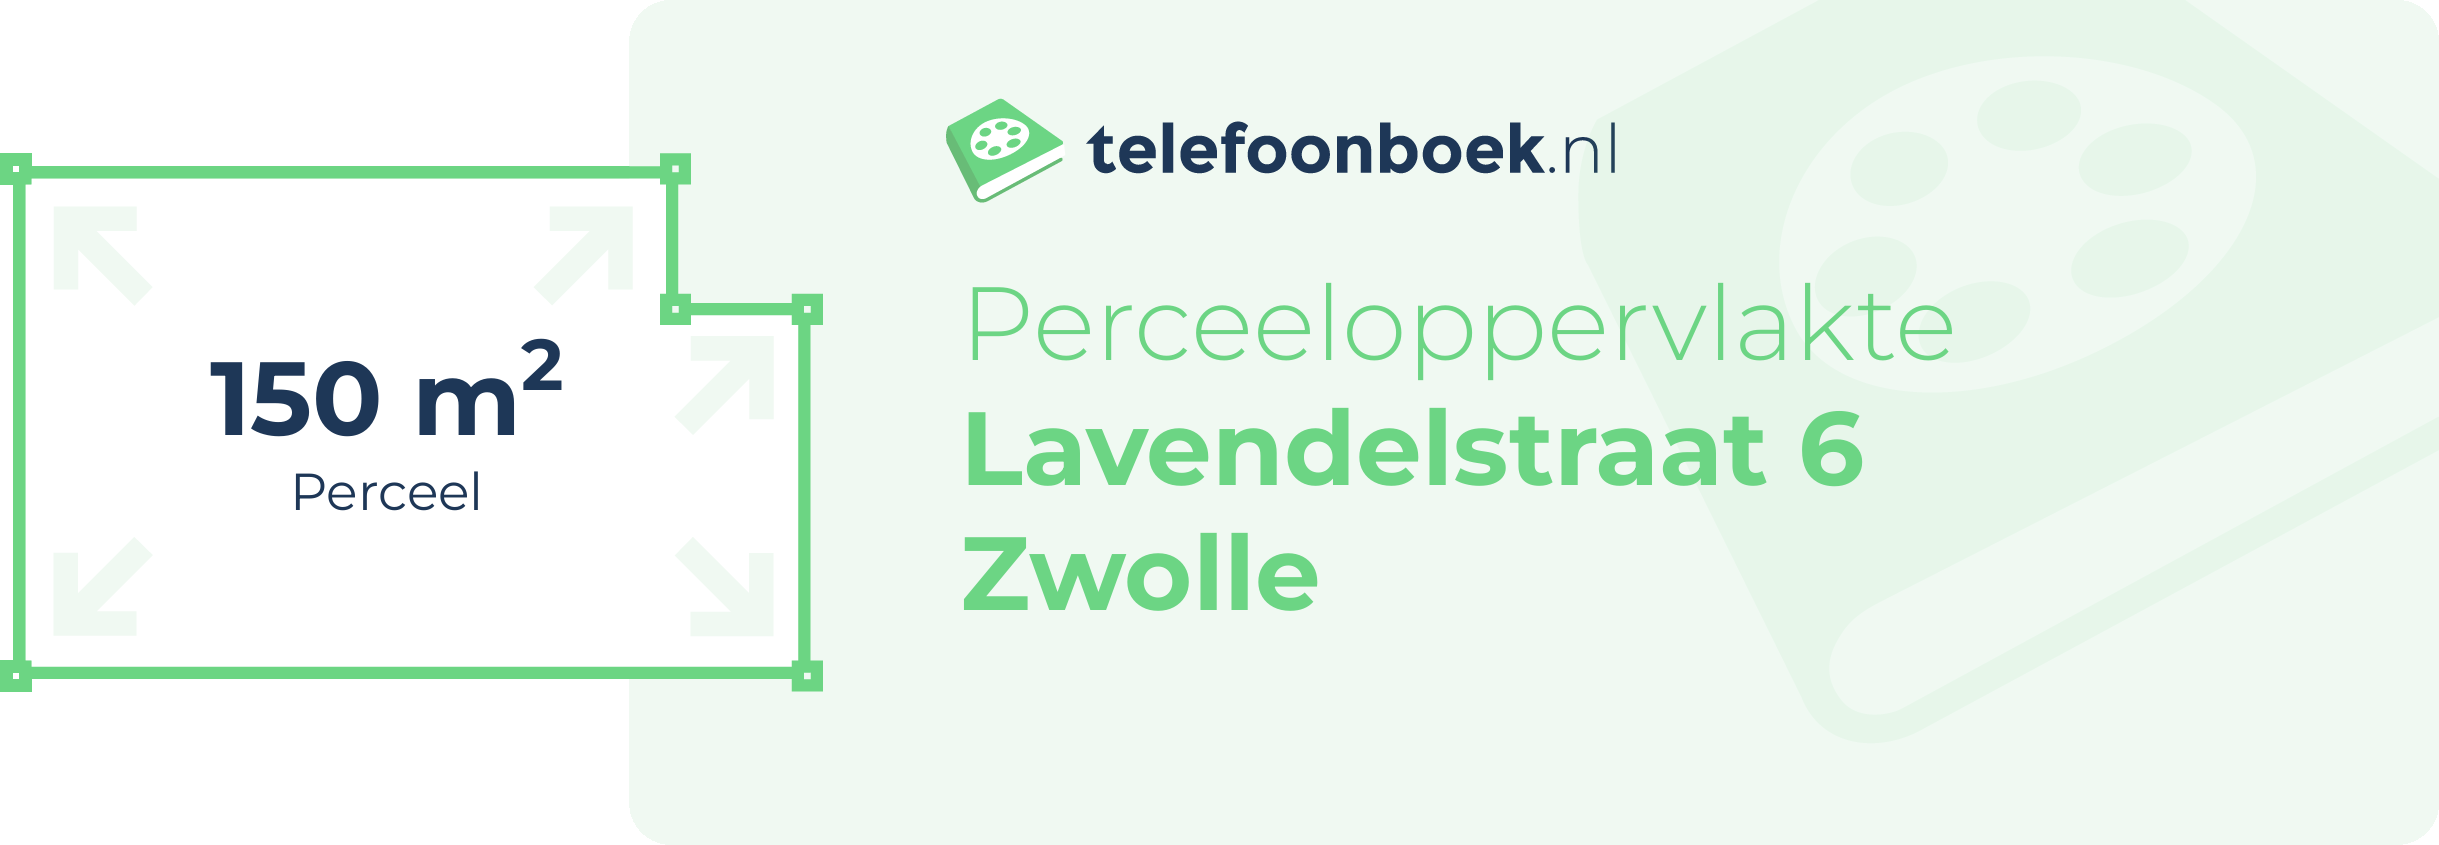 Perceeloppervlakte Lavendelstraat 6 Zwolle